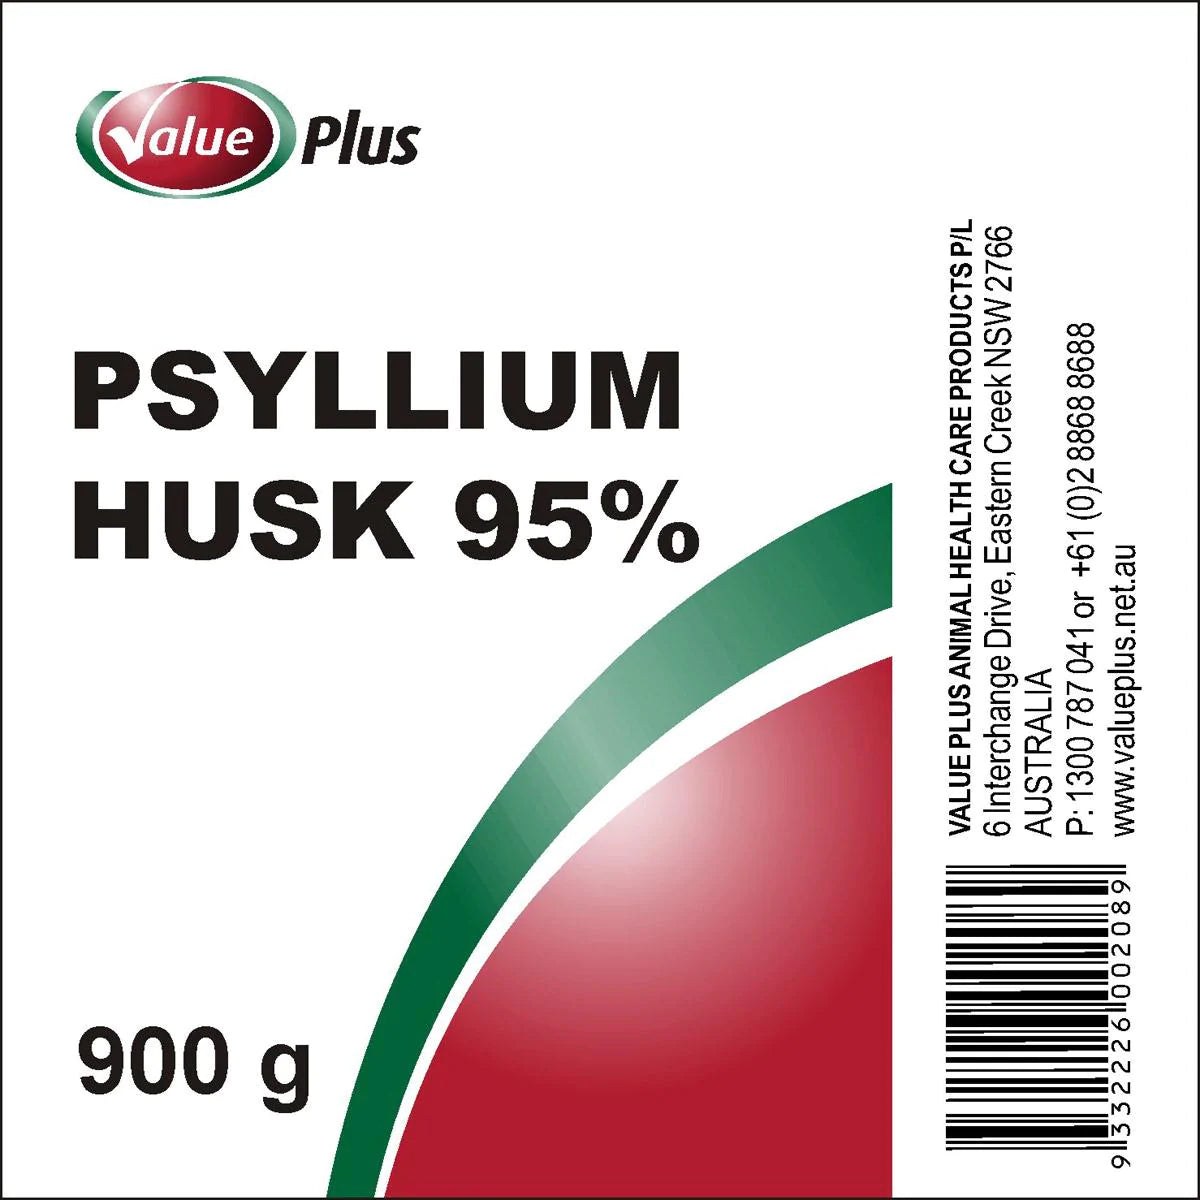 Value Plus Psyllium Husks 95%